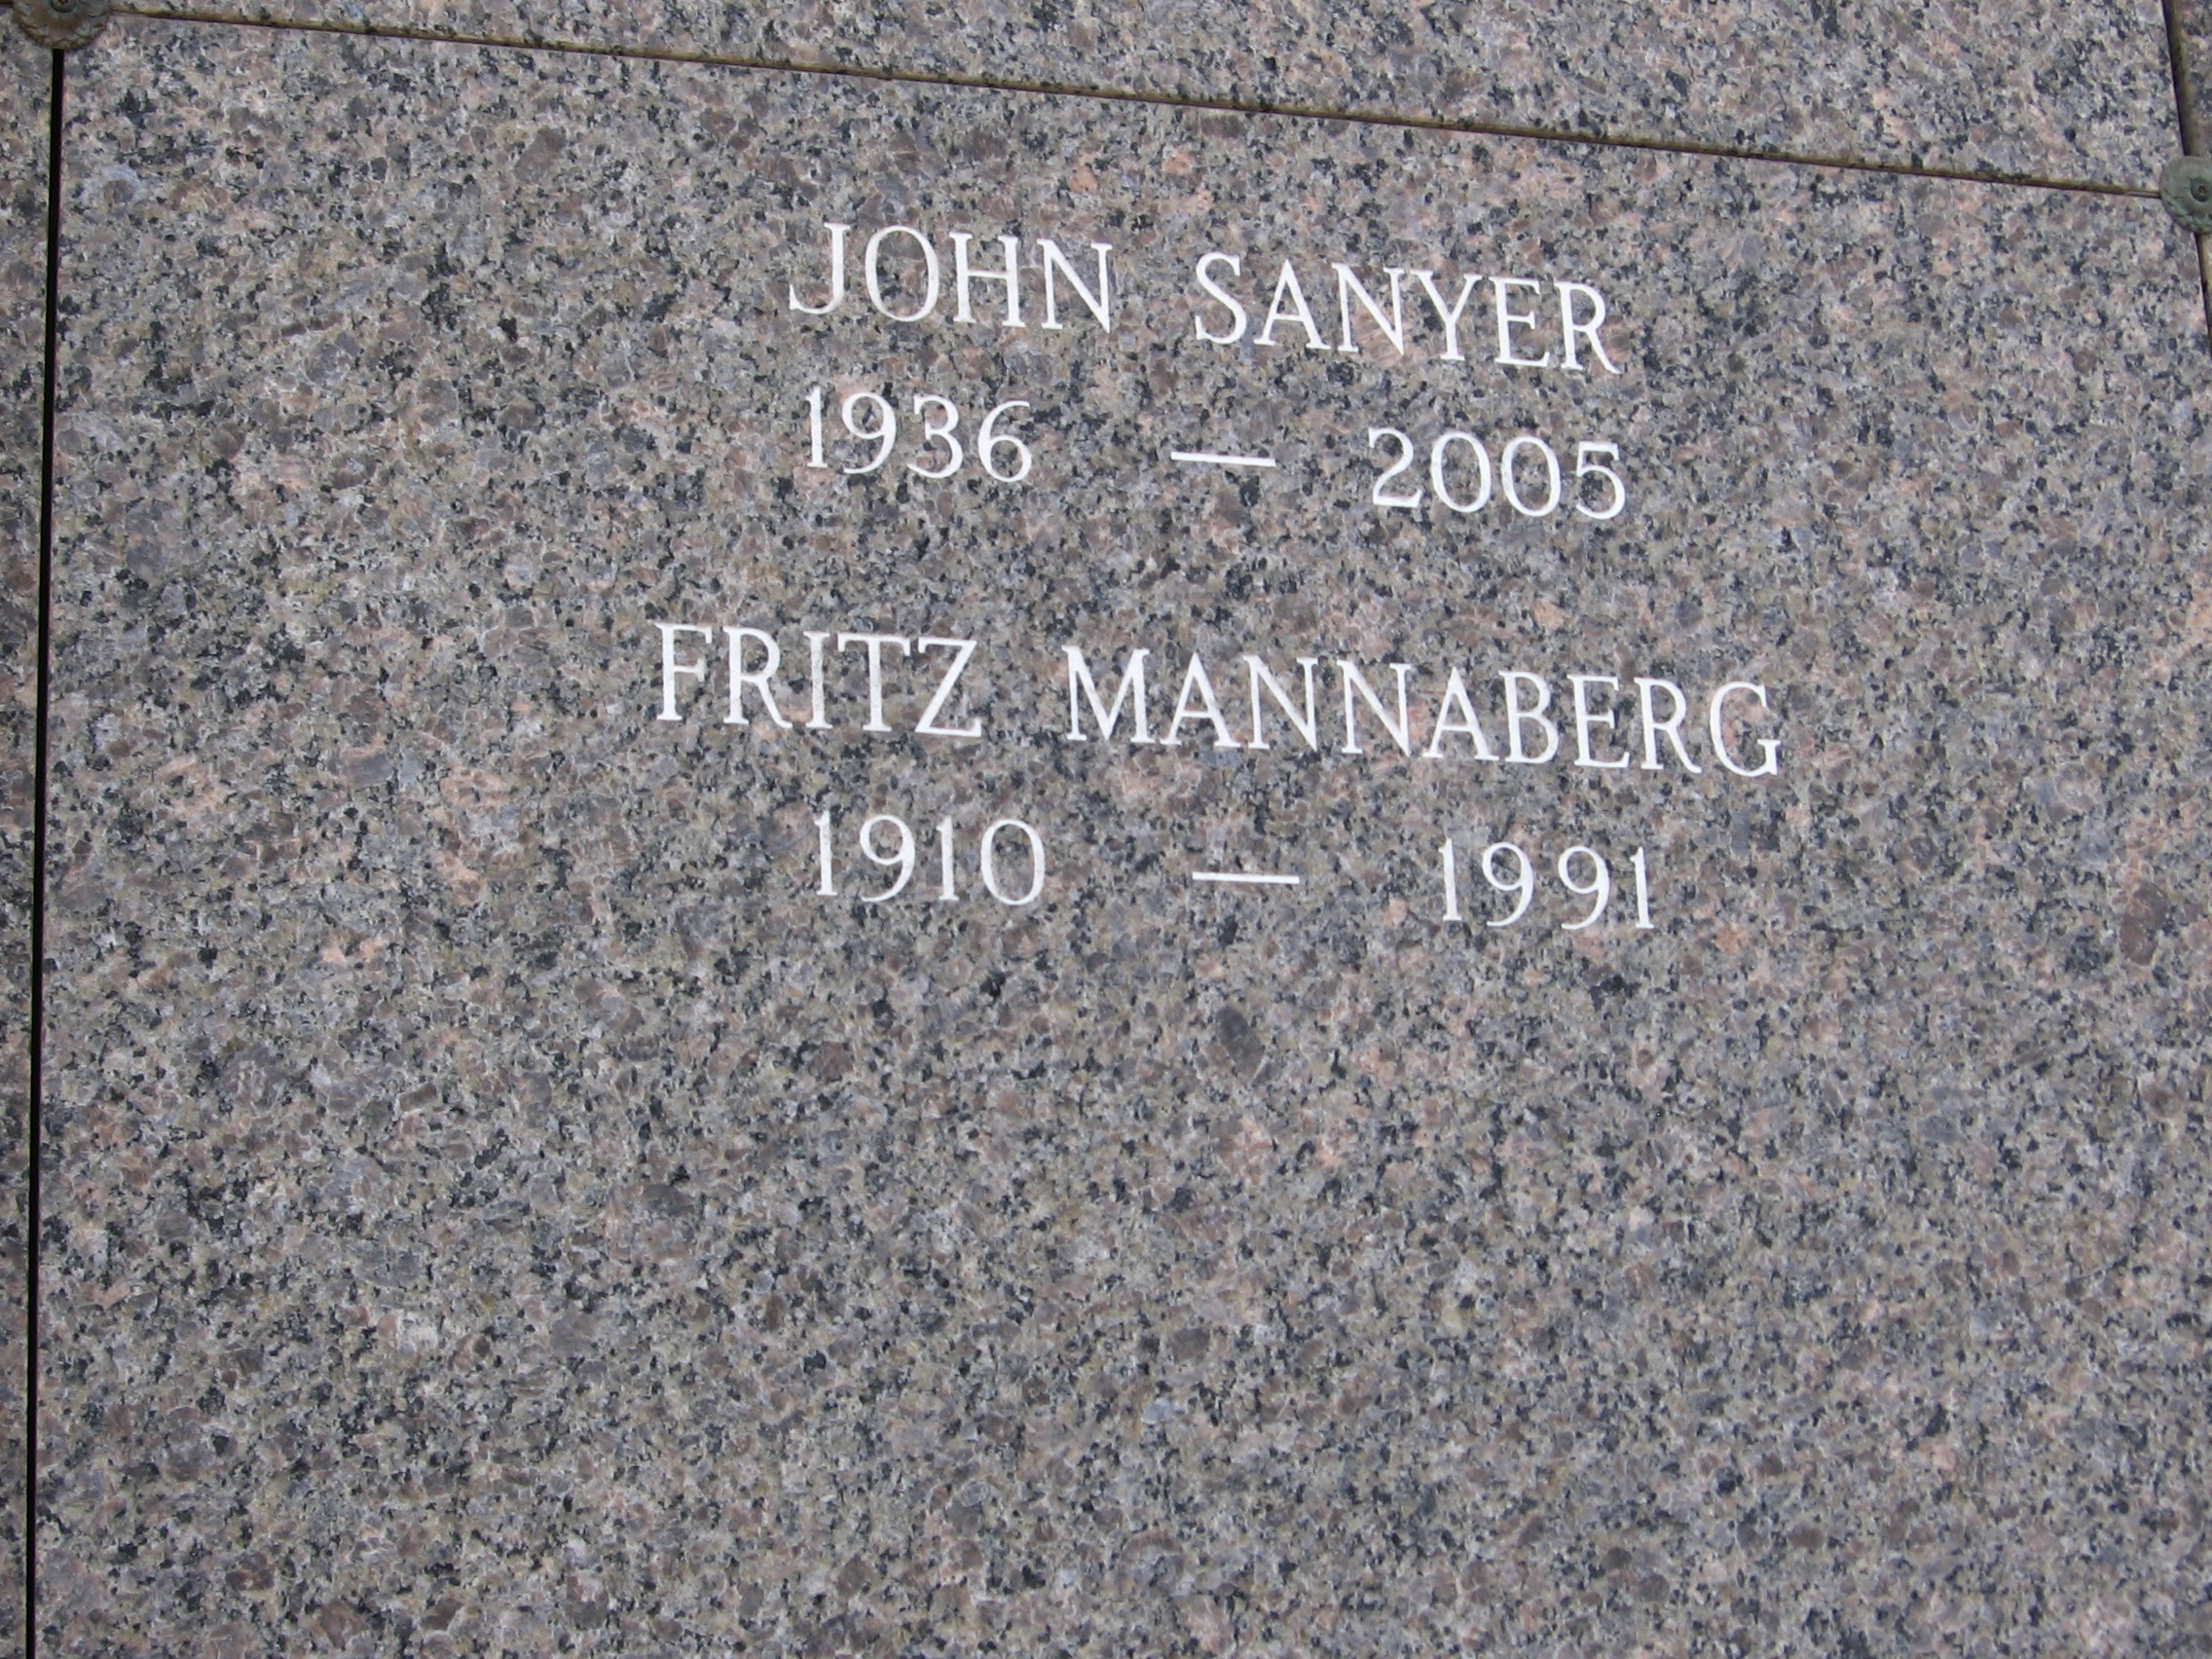 Fritz Mannaberg